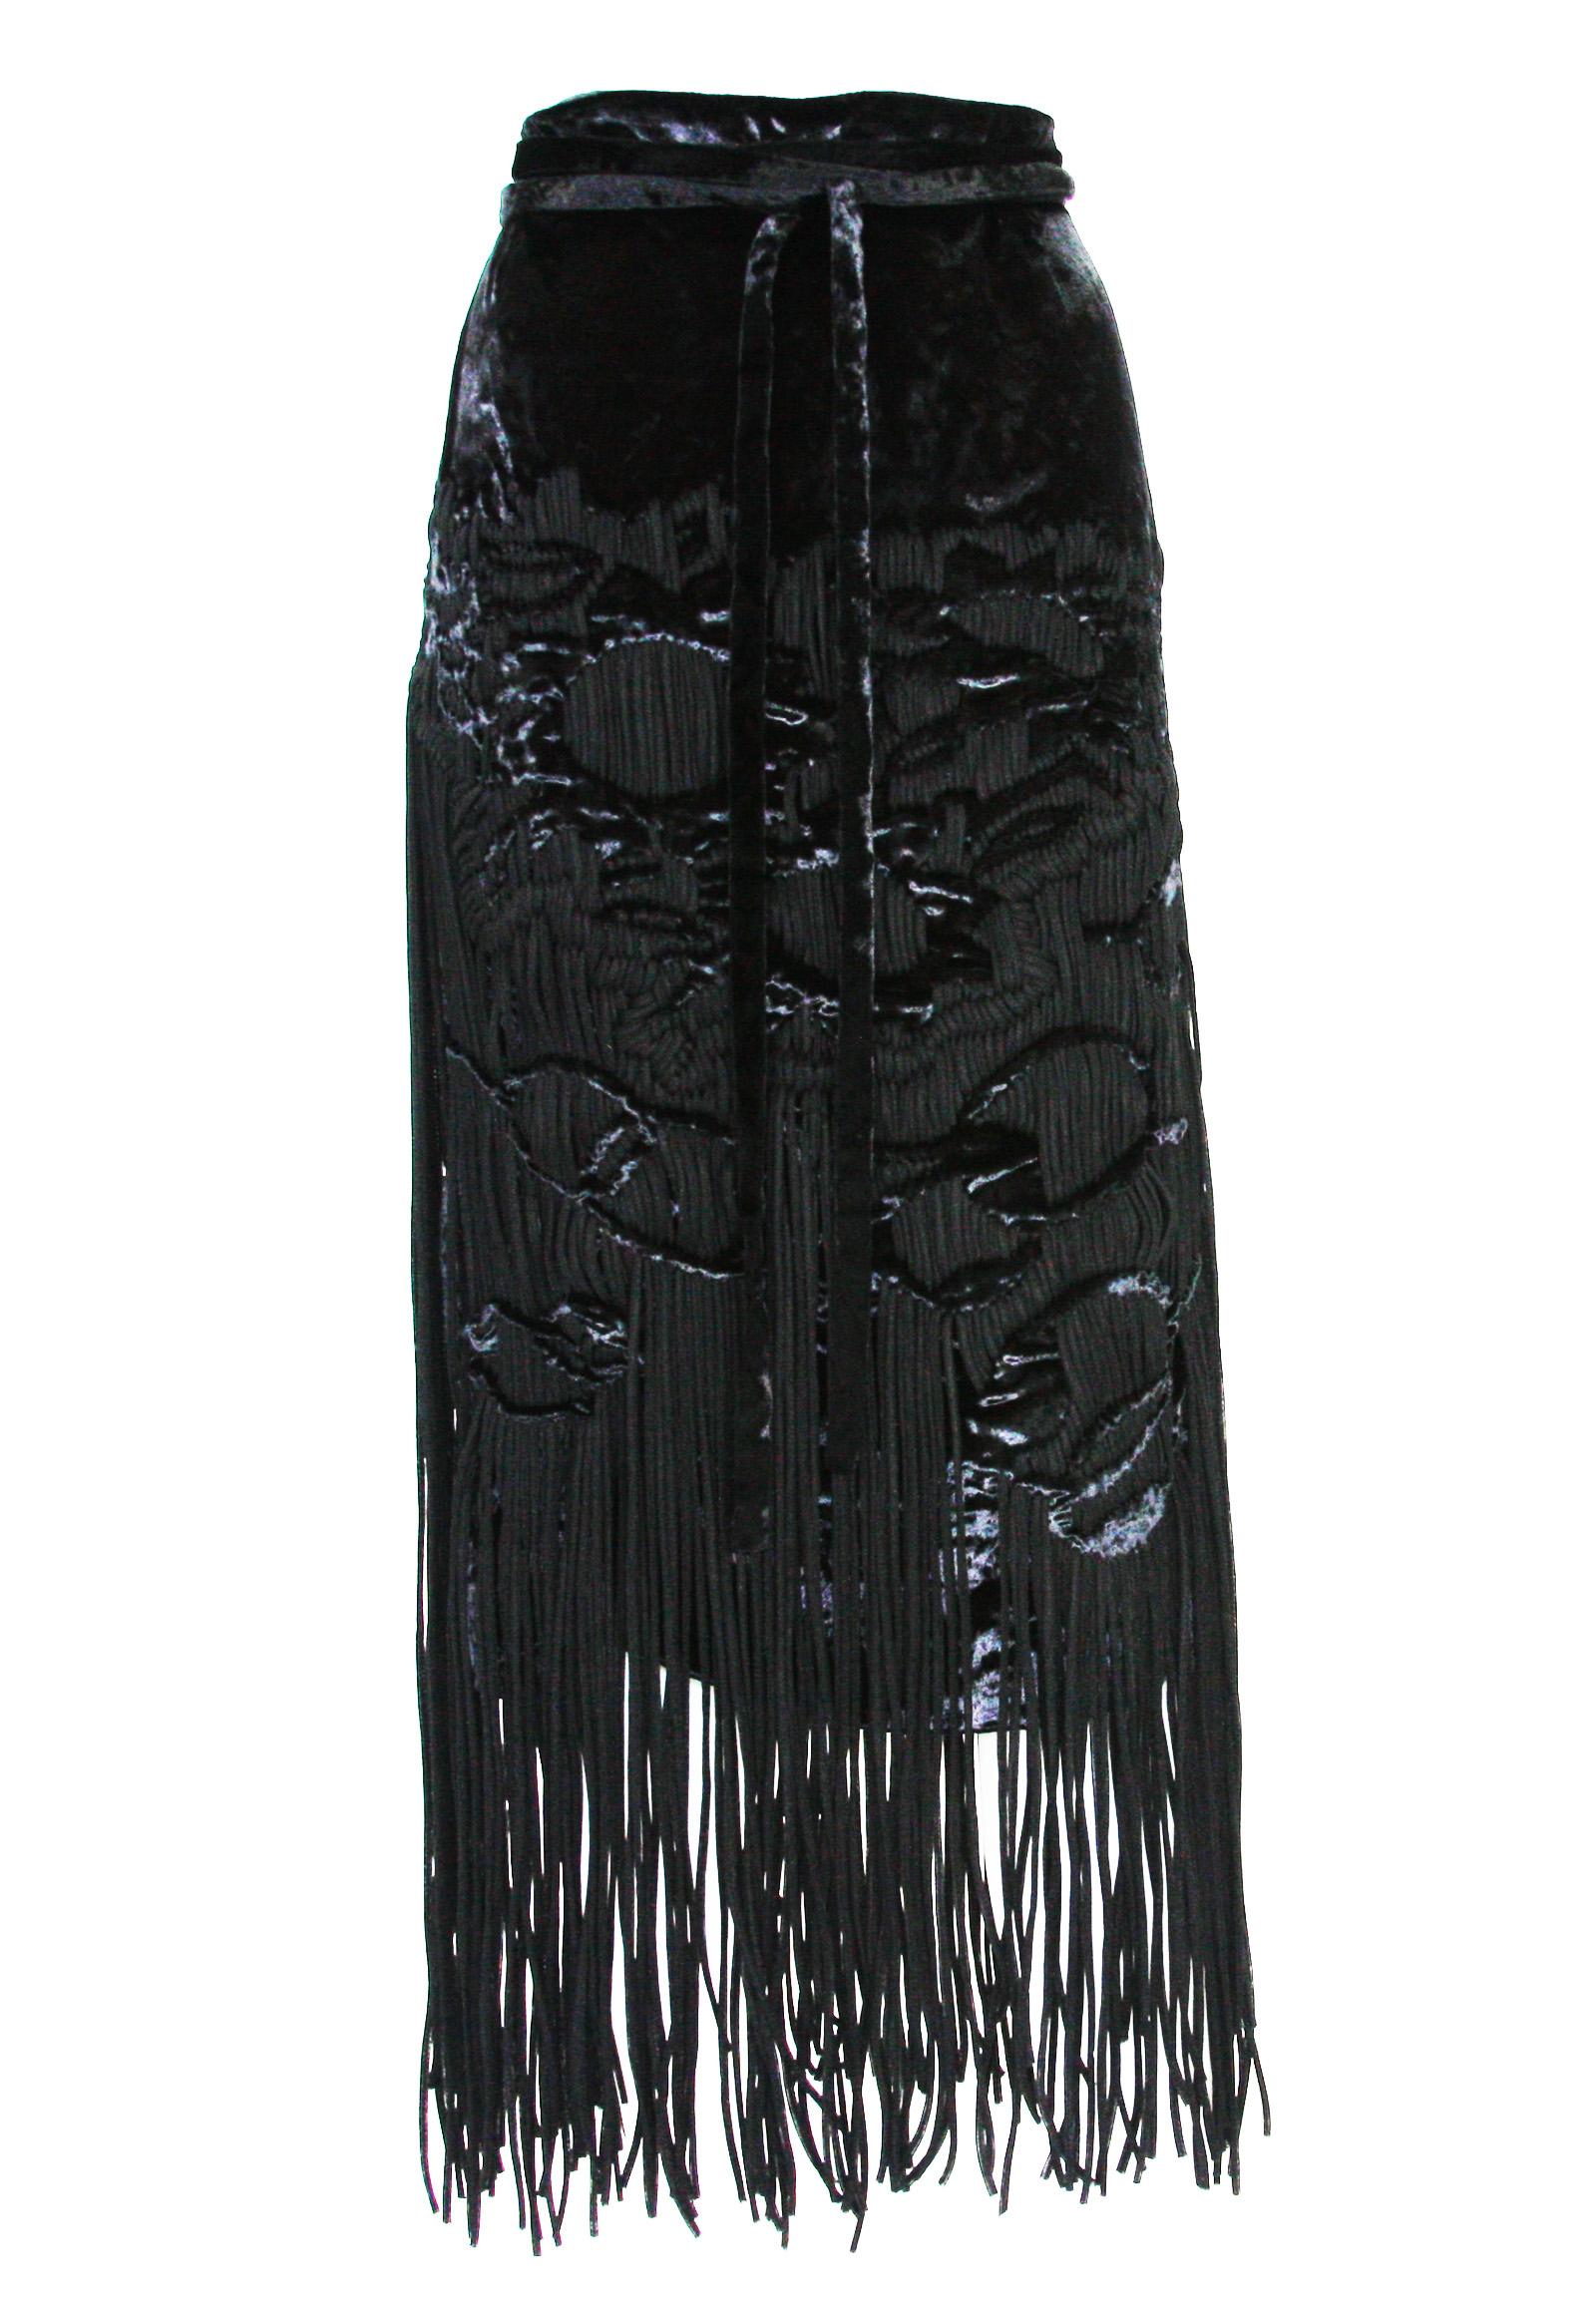 Tom Ford for Yves Saint Laurent 2001-2003 Collection Silk Top Velvet Skirt Suit  For Sale 5